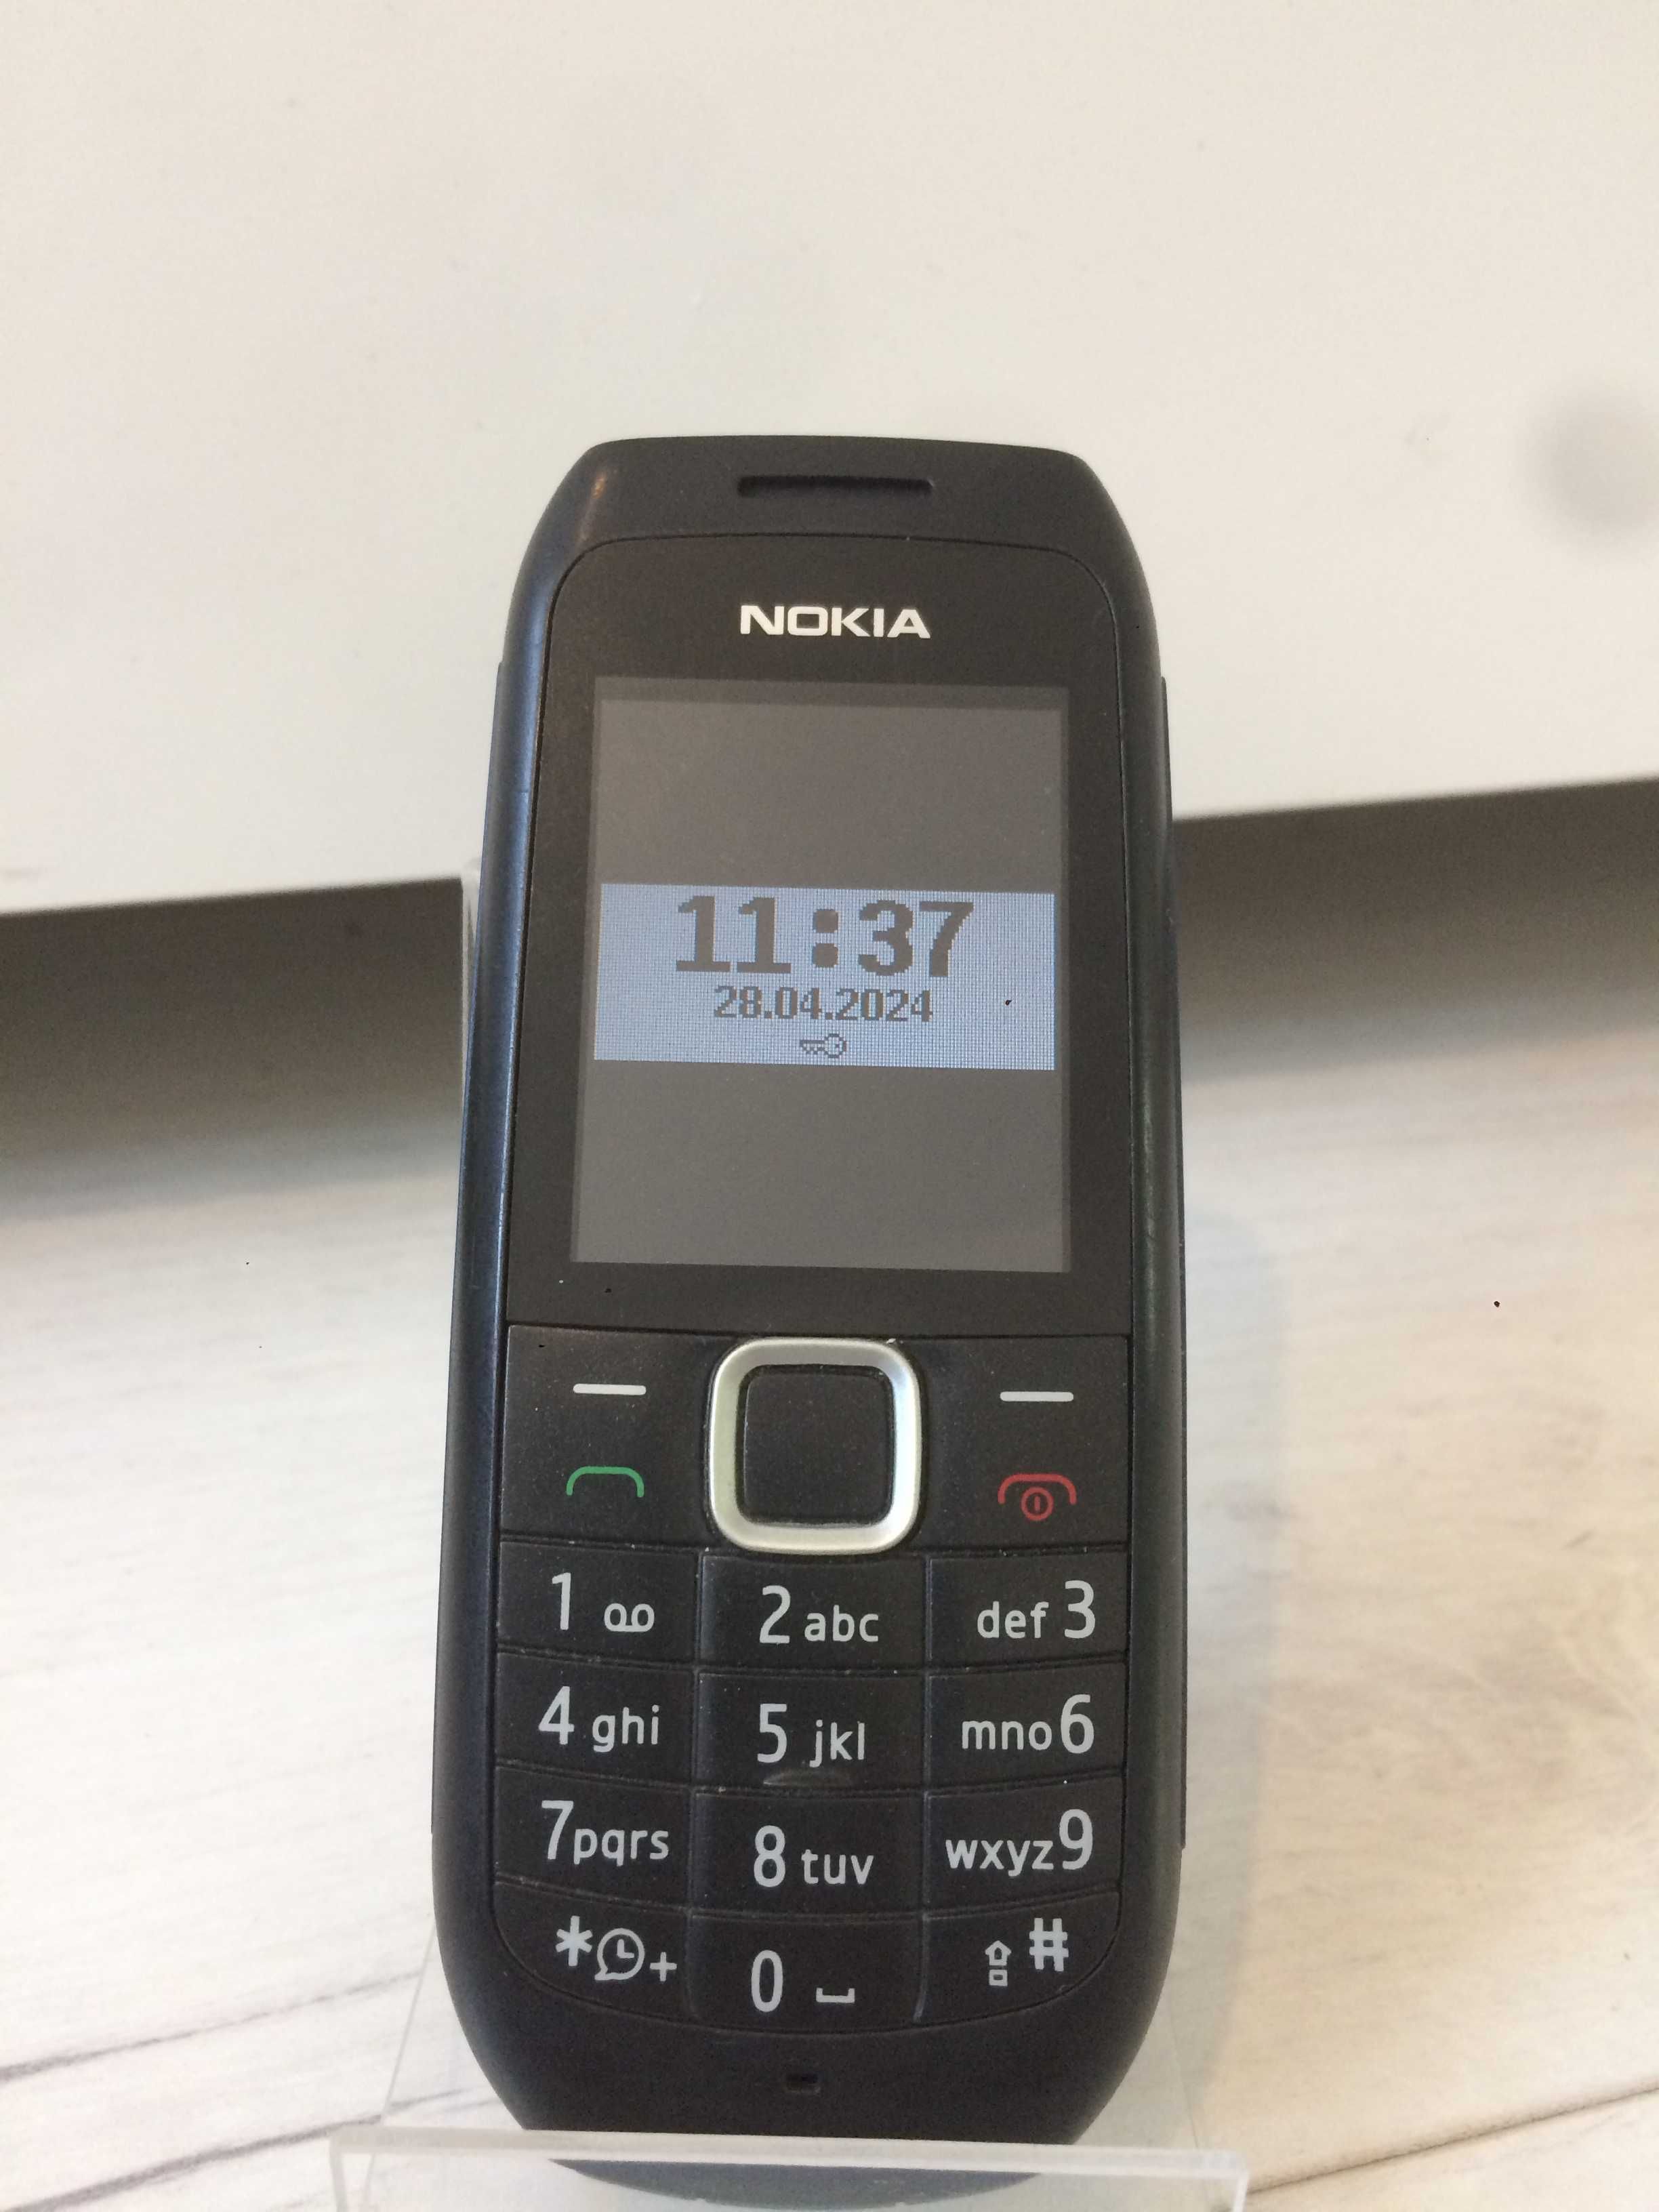 Nokia 1800 jak Nowa bez blokady sim-lock